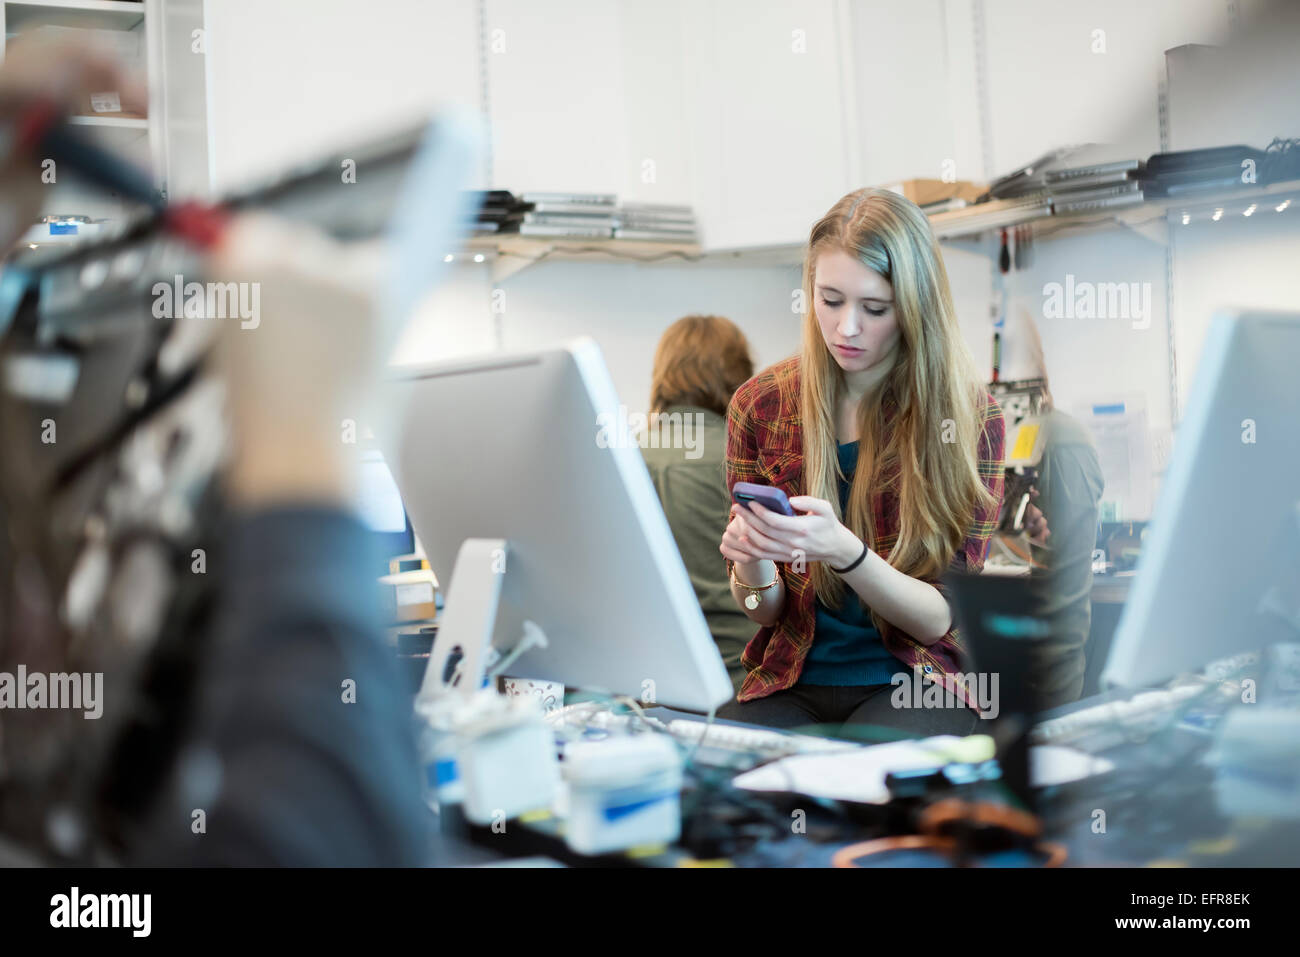 Atelier de réparation d'ordinateur. Une femme à l'aide d'un téléphone intelligent. Des gens qui travaillent sur les réparations d'ordinateur. Banque D'Images